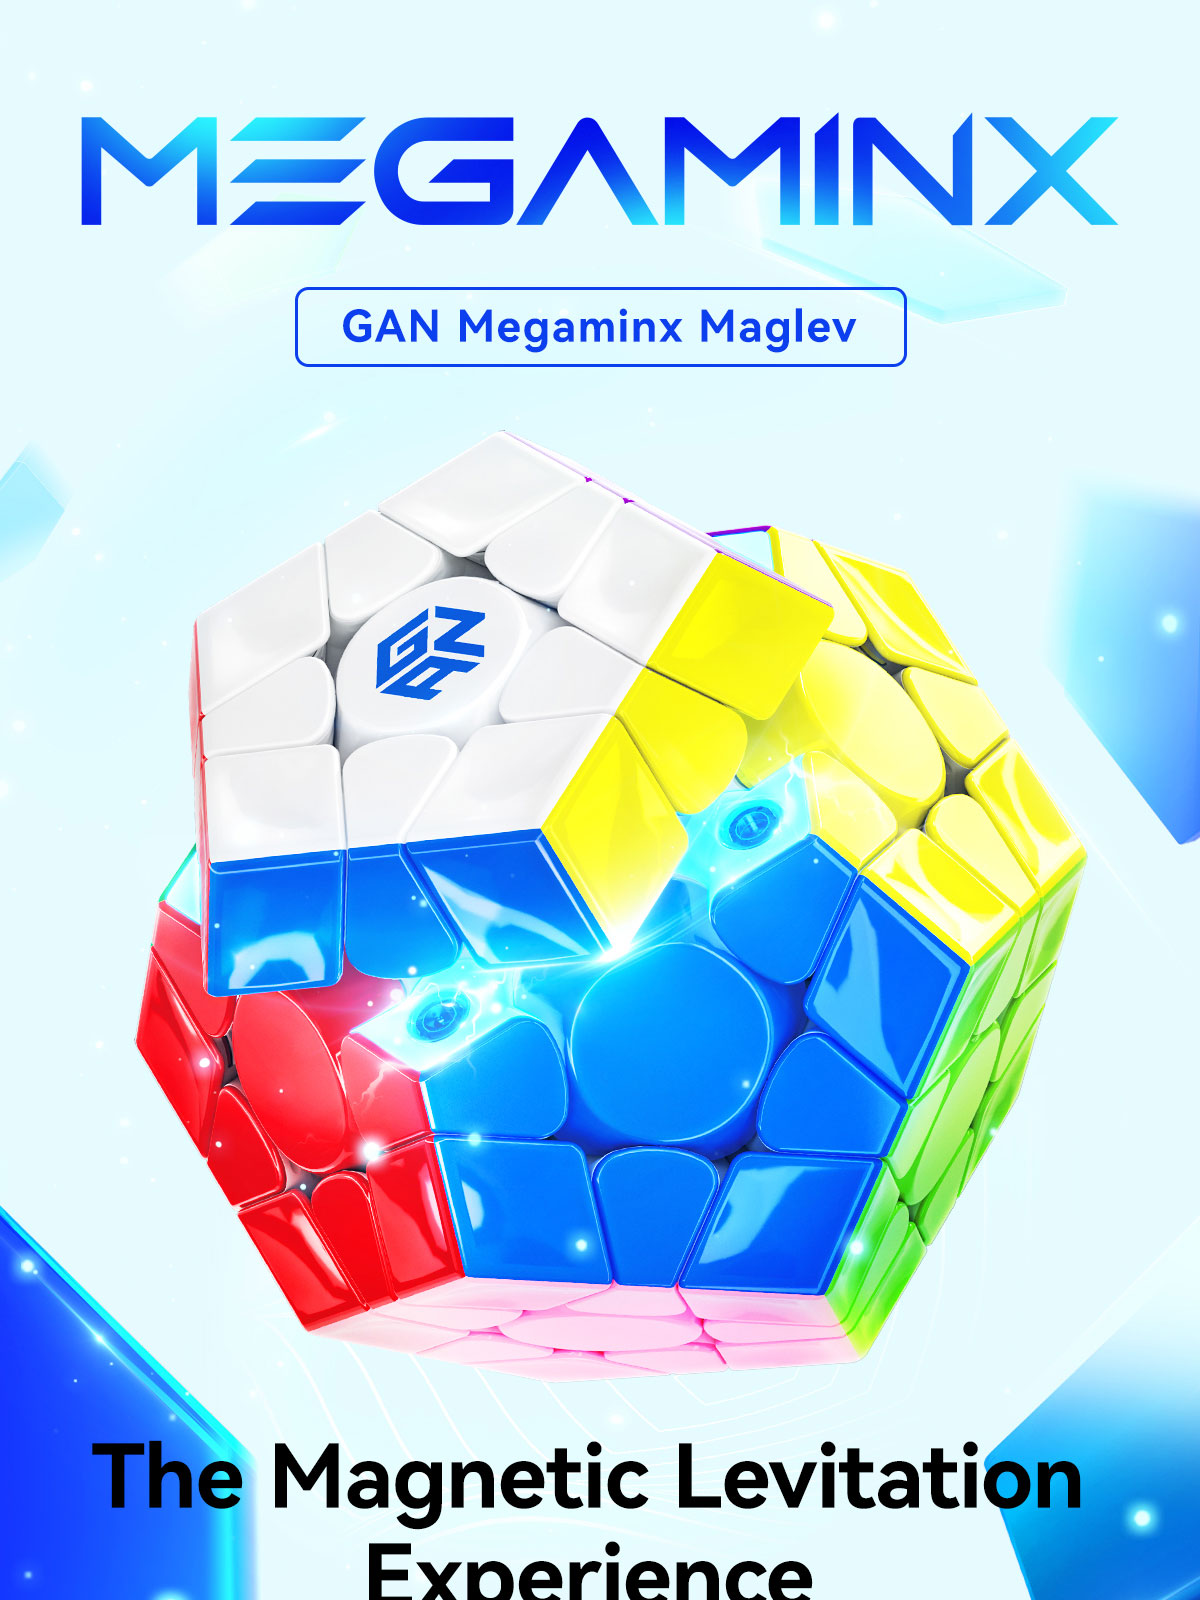 gan-megaminx-maglev-magnetic-levitation